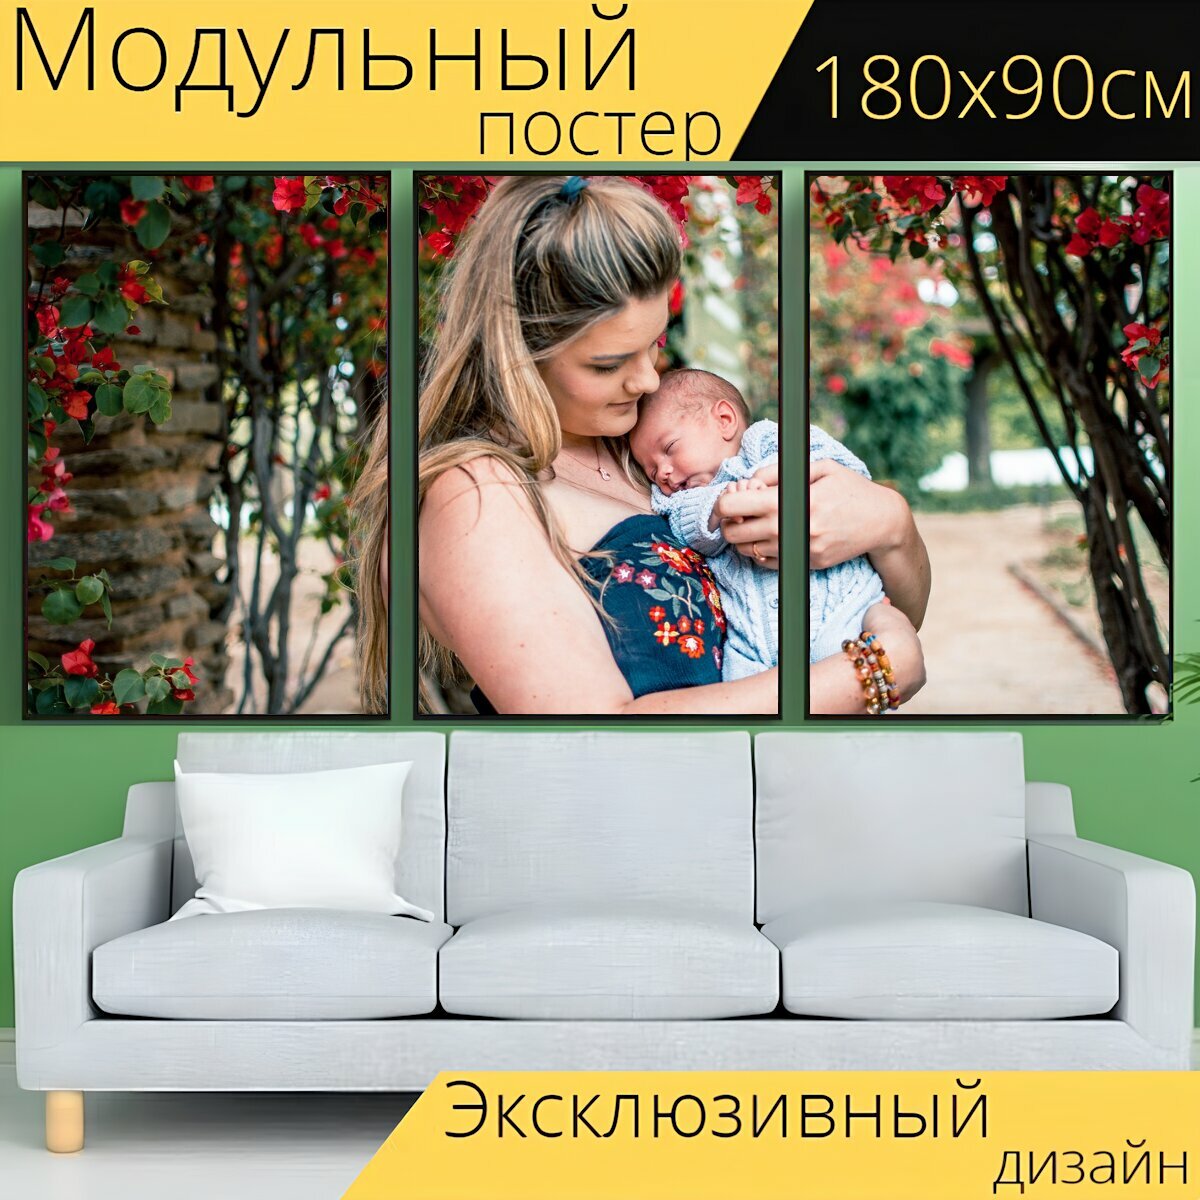 Модульный постер "Мать сын, материнство, новорожденный" 180 x 90 см. для интерьера